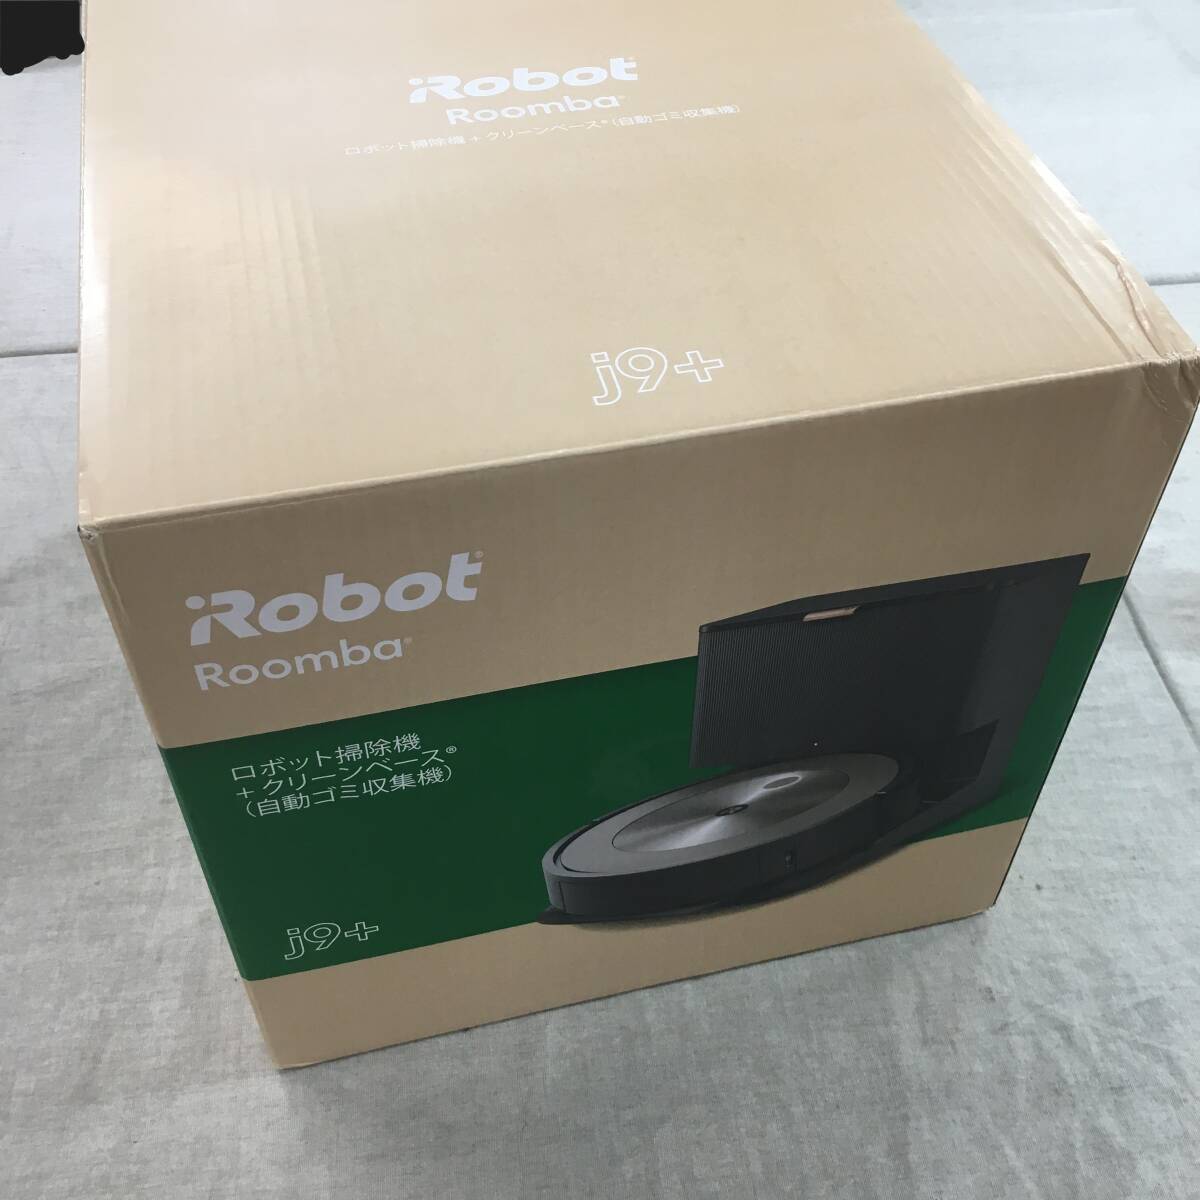 未使用 ルンバ j9+ ロボット掃除機 アイロボット(iRobot) 障害物を回避 物体認識 自動ゴミ収集 wifi対応 マッピング j955860の画像1